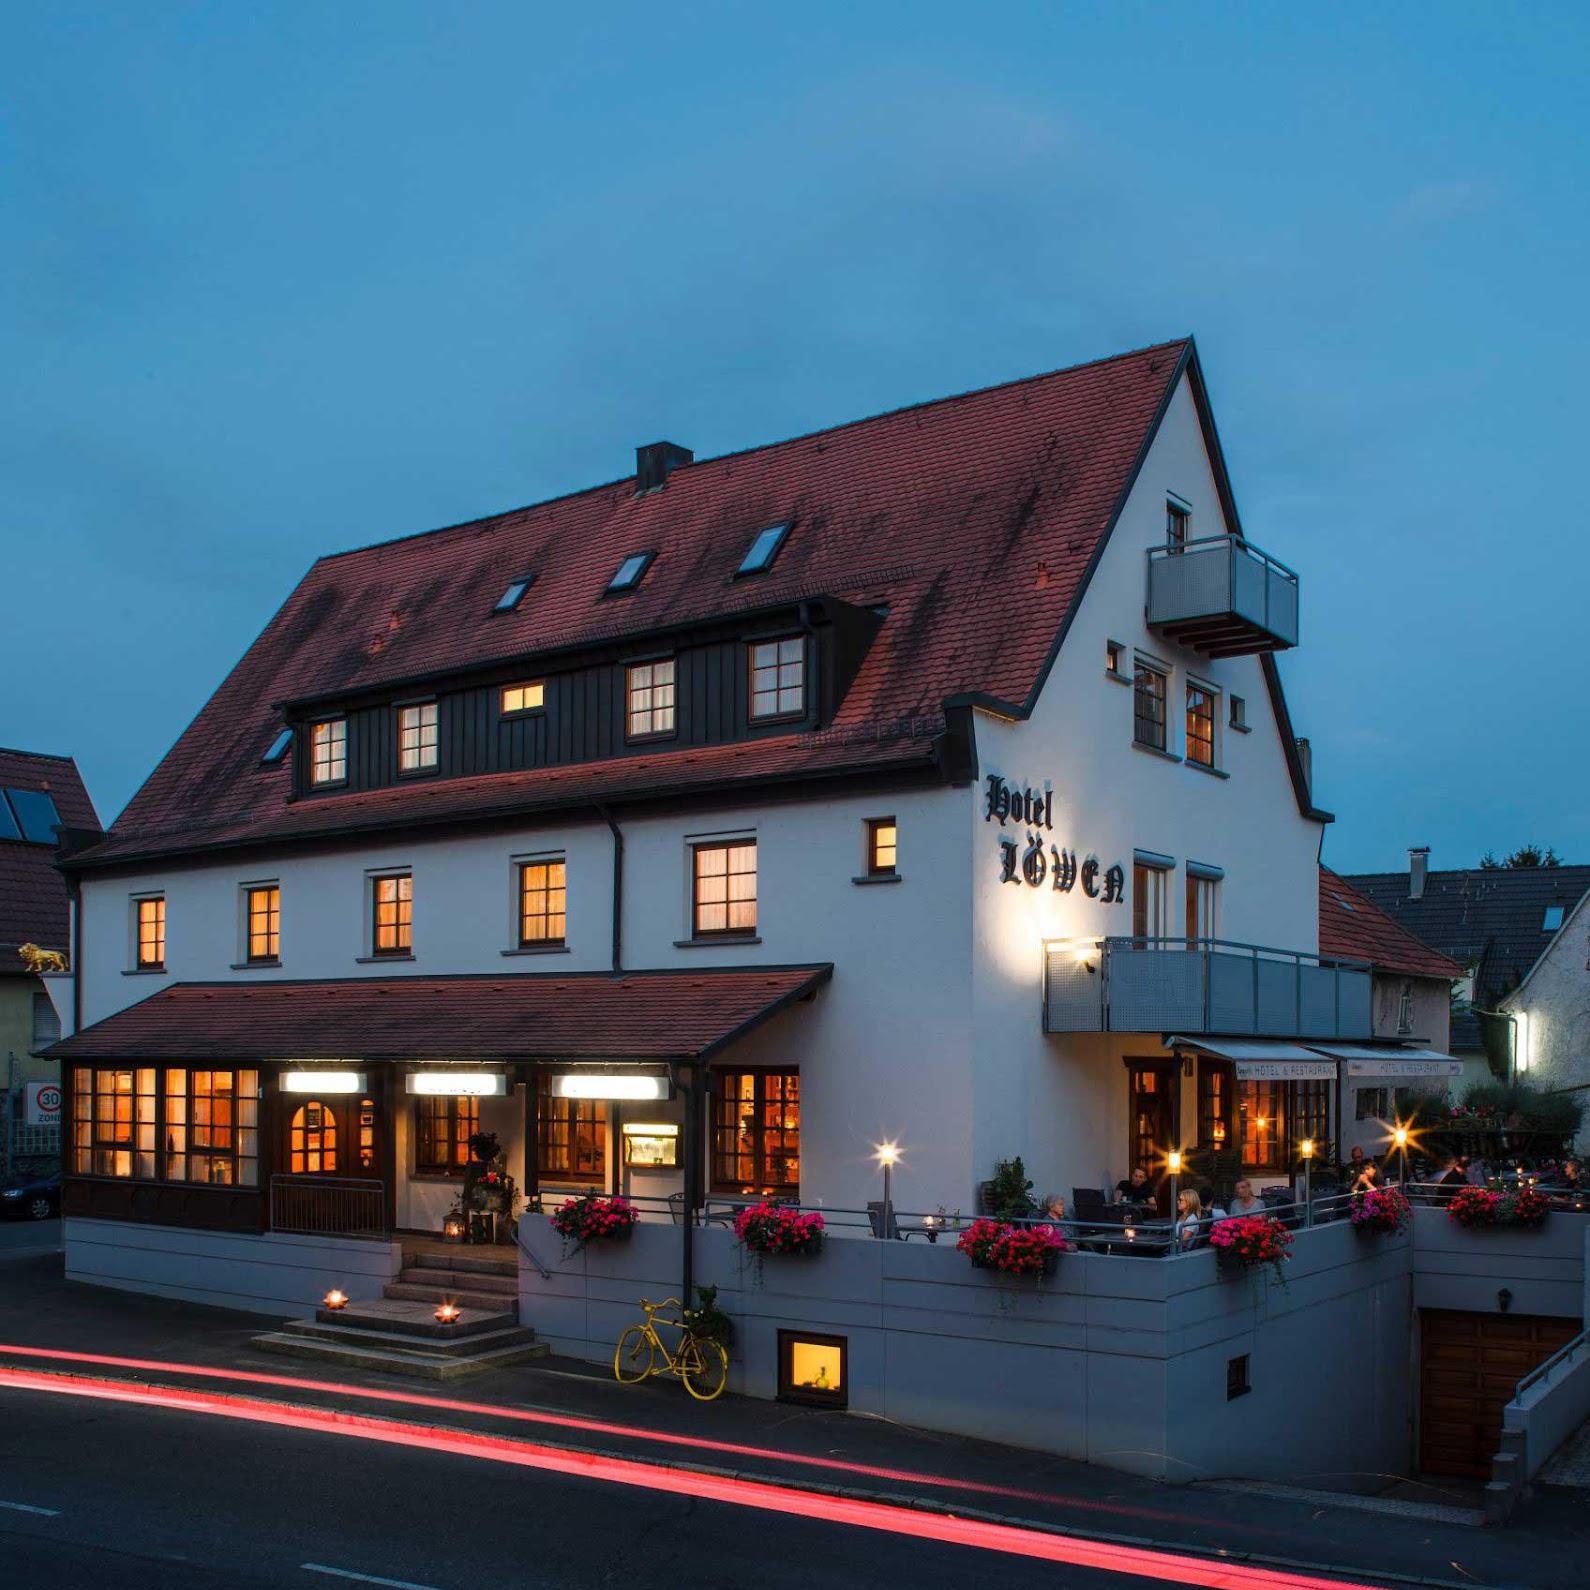 Restaurant "Hotel-Restaurant Löwen" in Wendlingen am Neckar